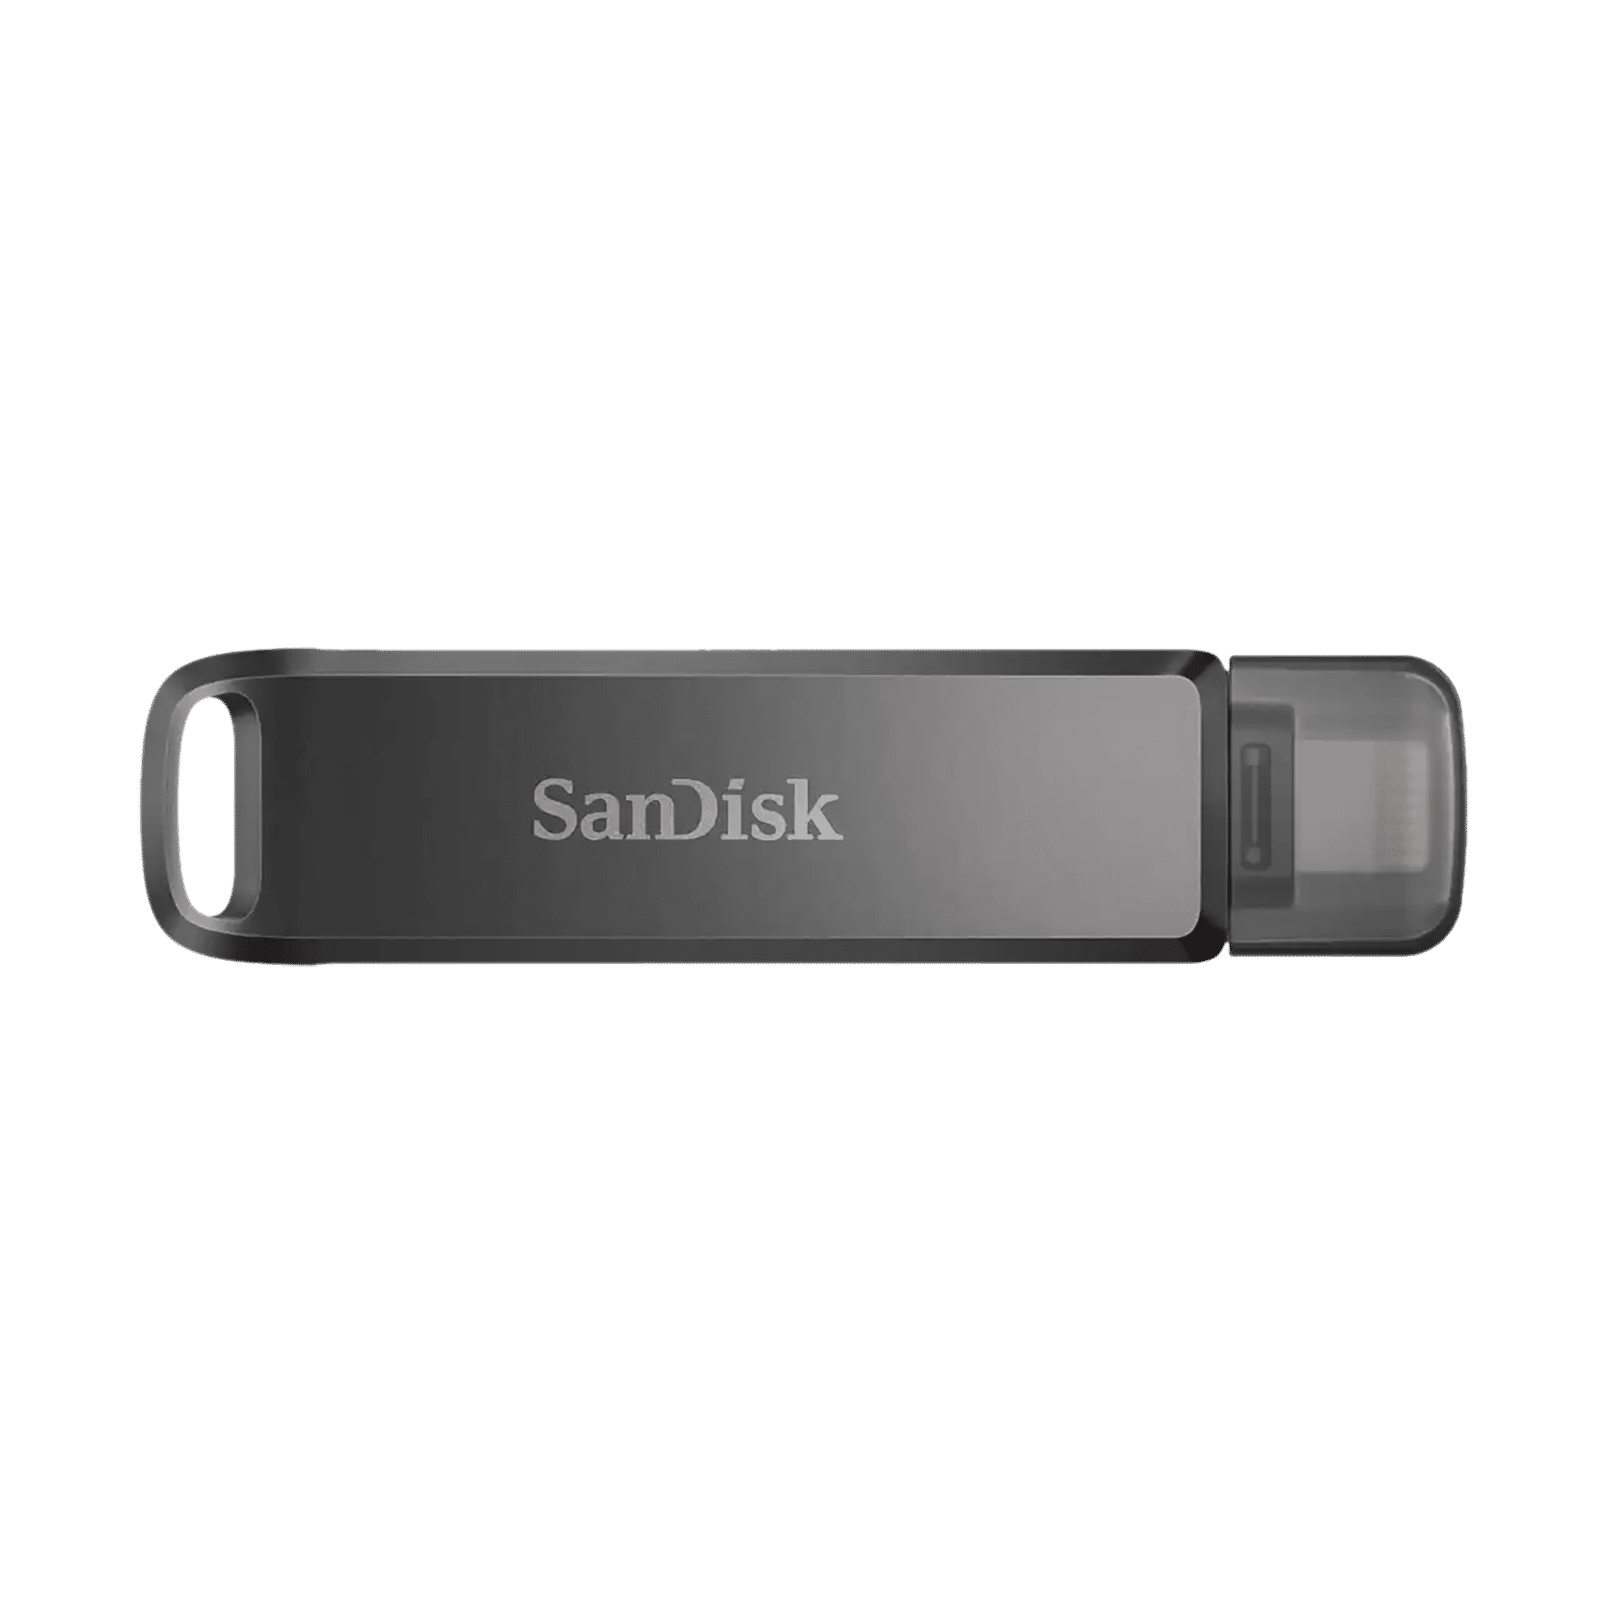 SanDisk 32GB iXpand Flip USB 3.1 Flash Drive